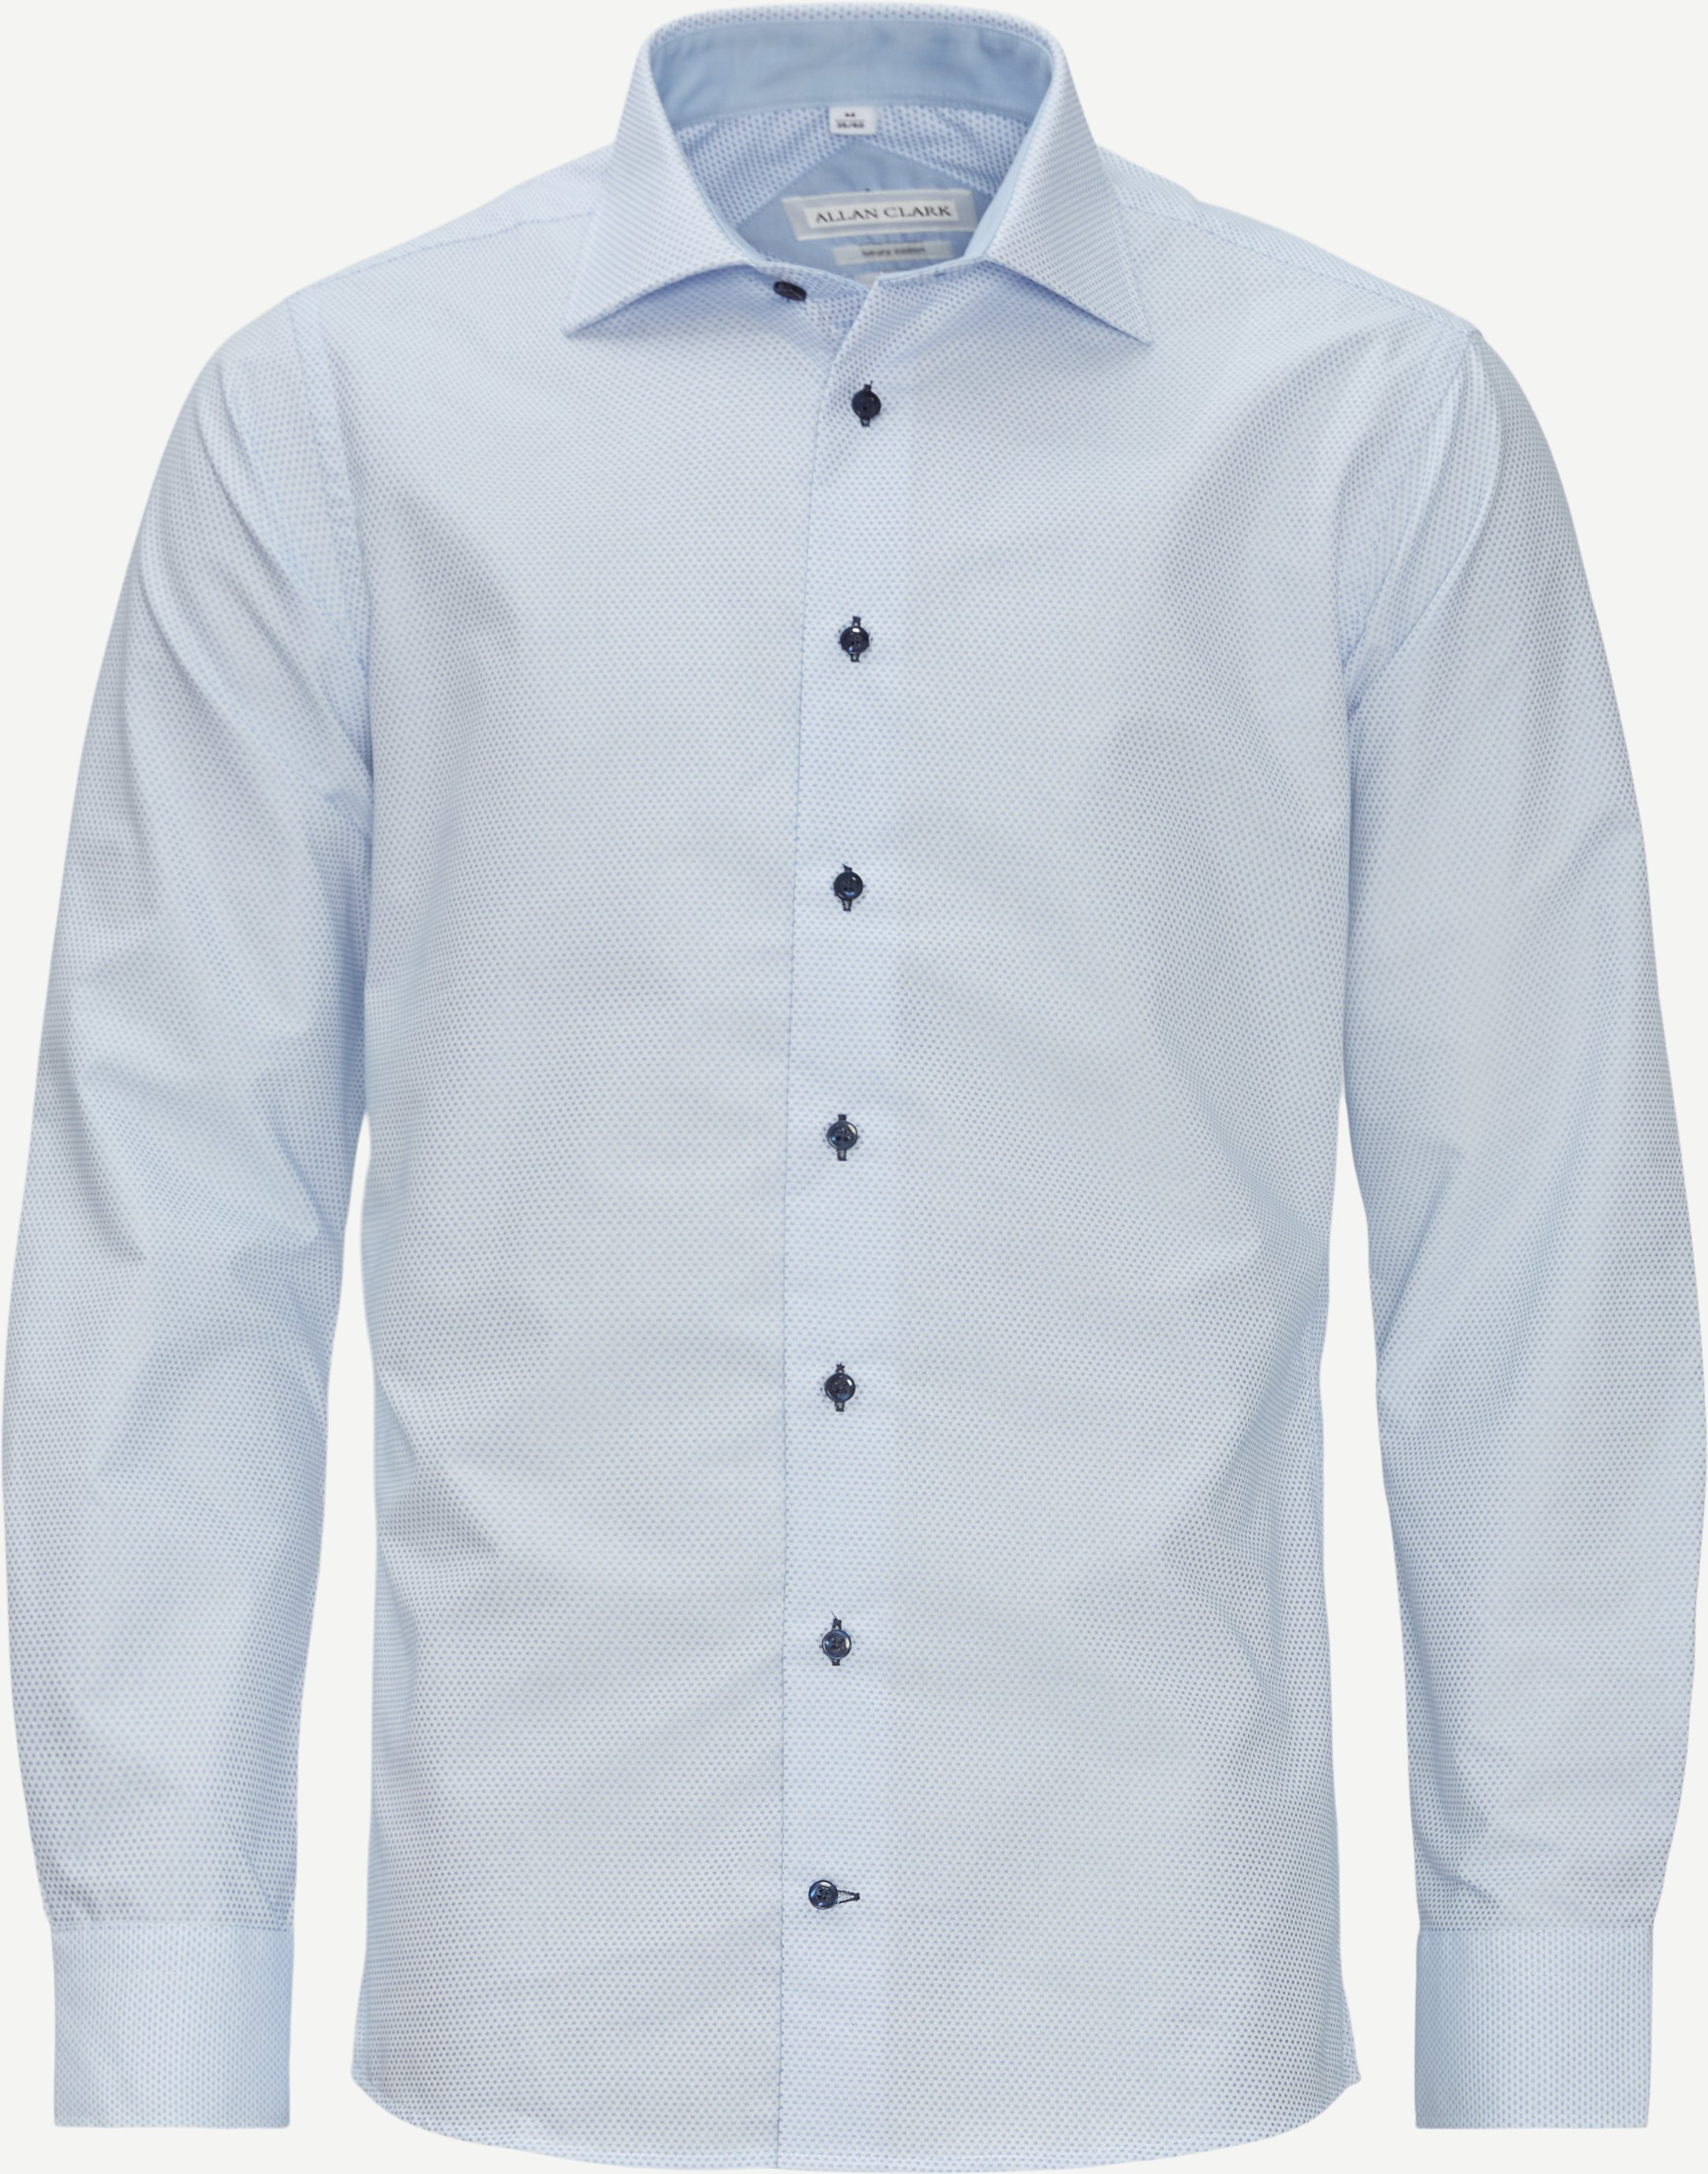 Walsall Skjorte - Skjorter - Blå